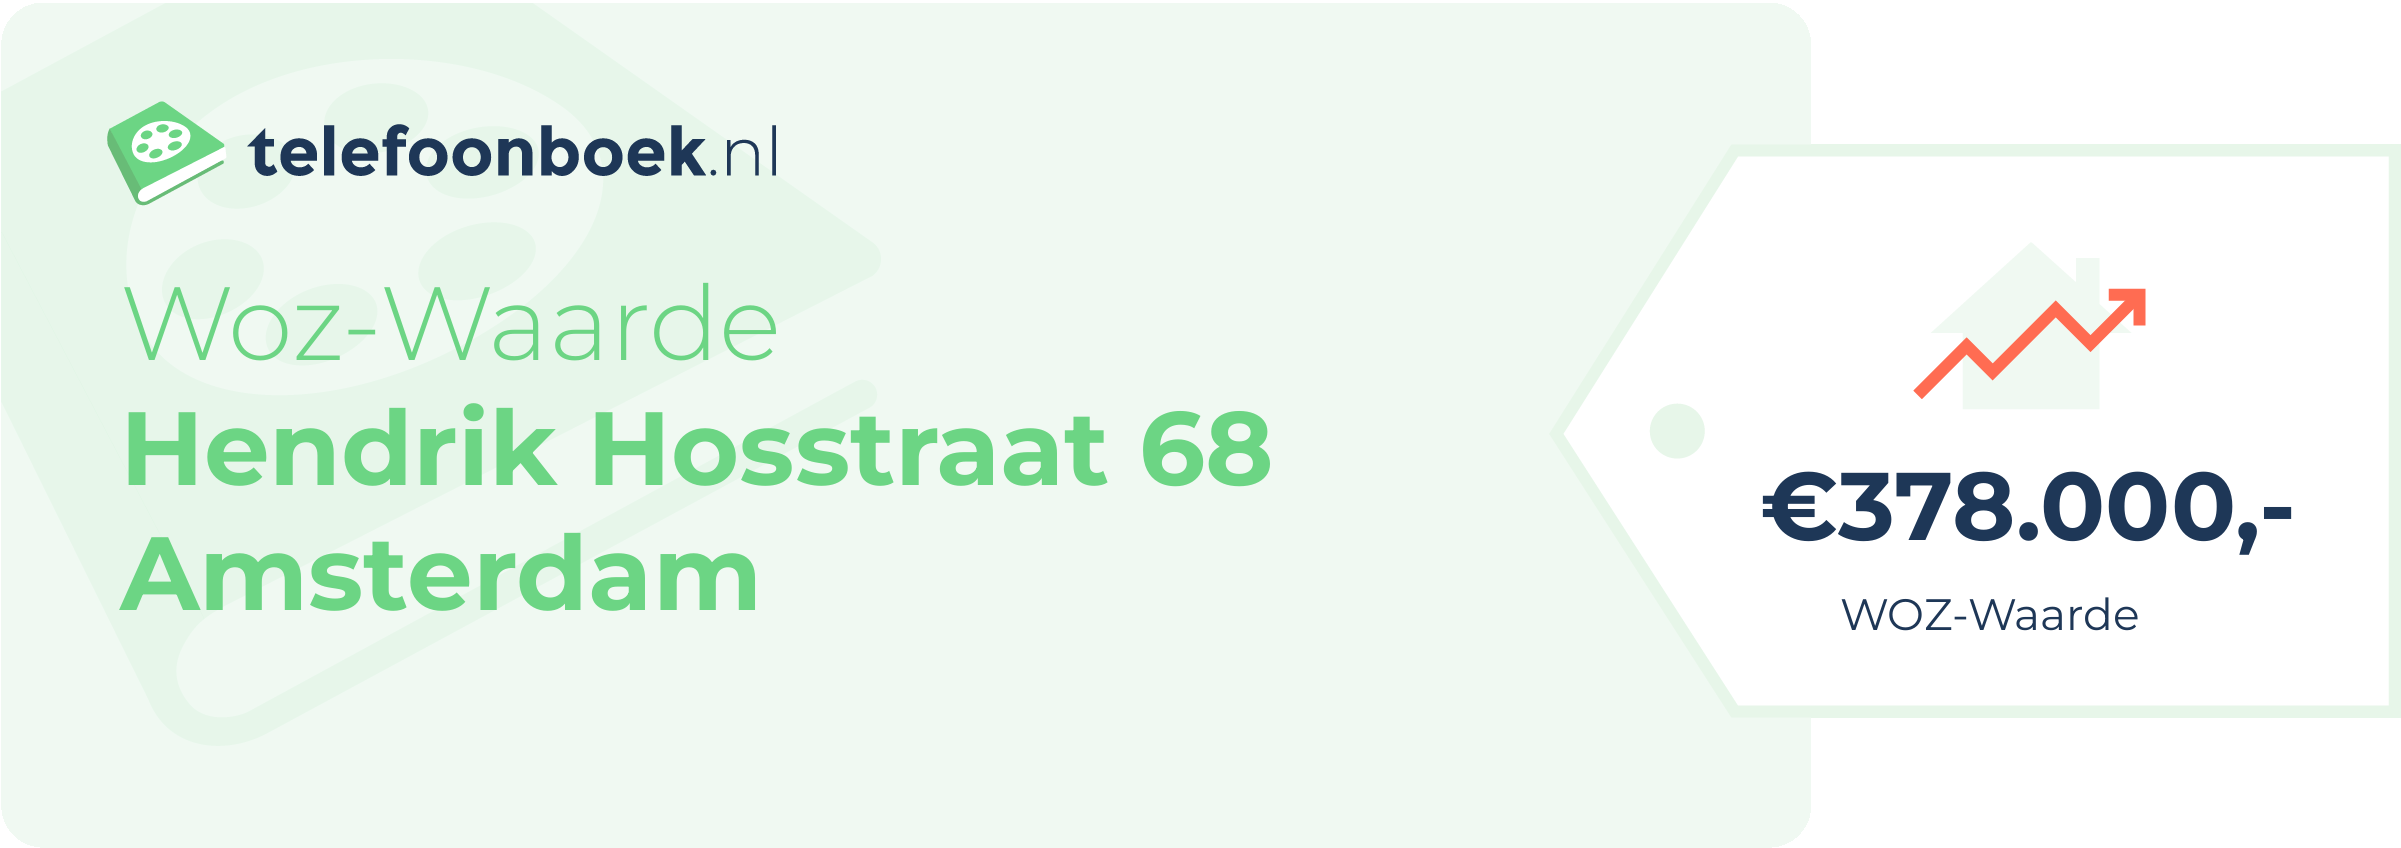 WOZ-waarde Hendrik Hosstraat 68 Amsterdam